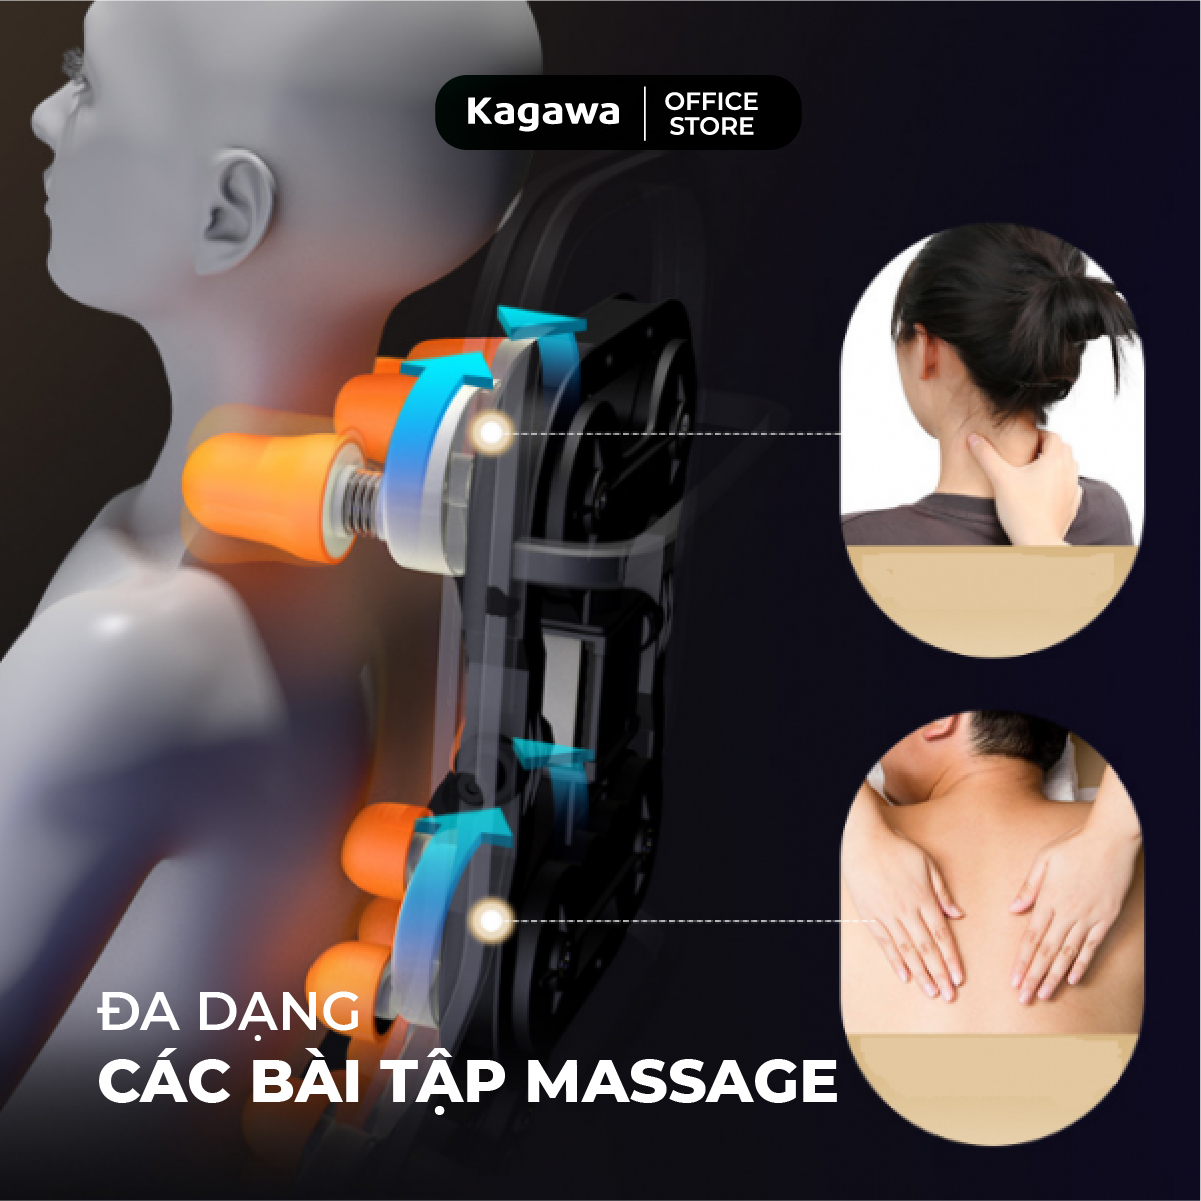 Ghế massage toàn thân Kagawa K16 đa chức năng, công nghệ quét AI thông minh, tự động dò tìm huyệt đạo